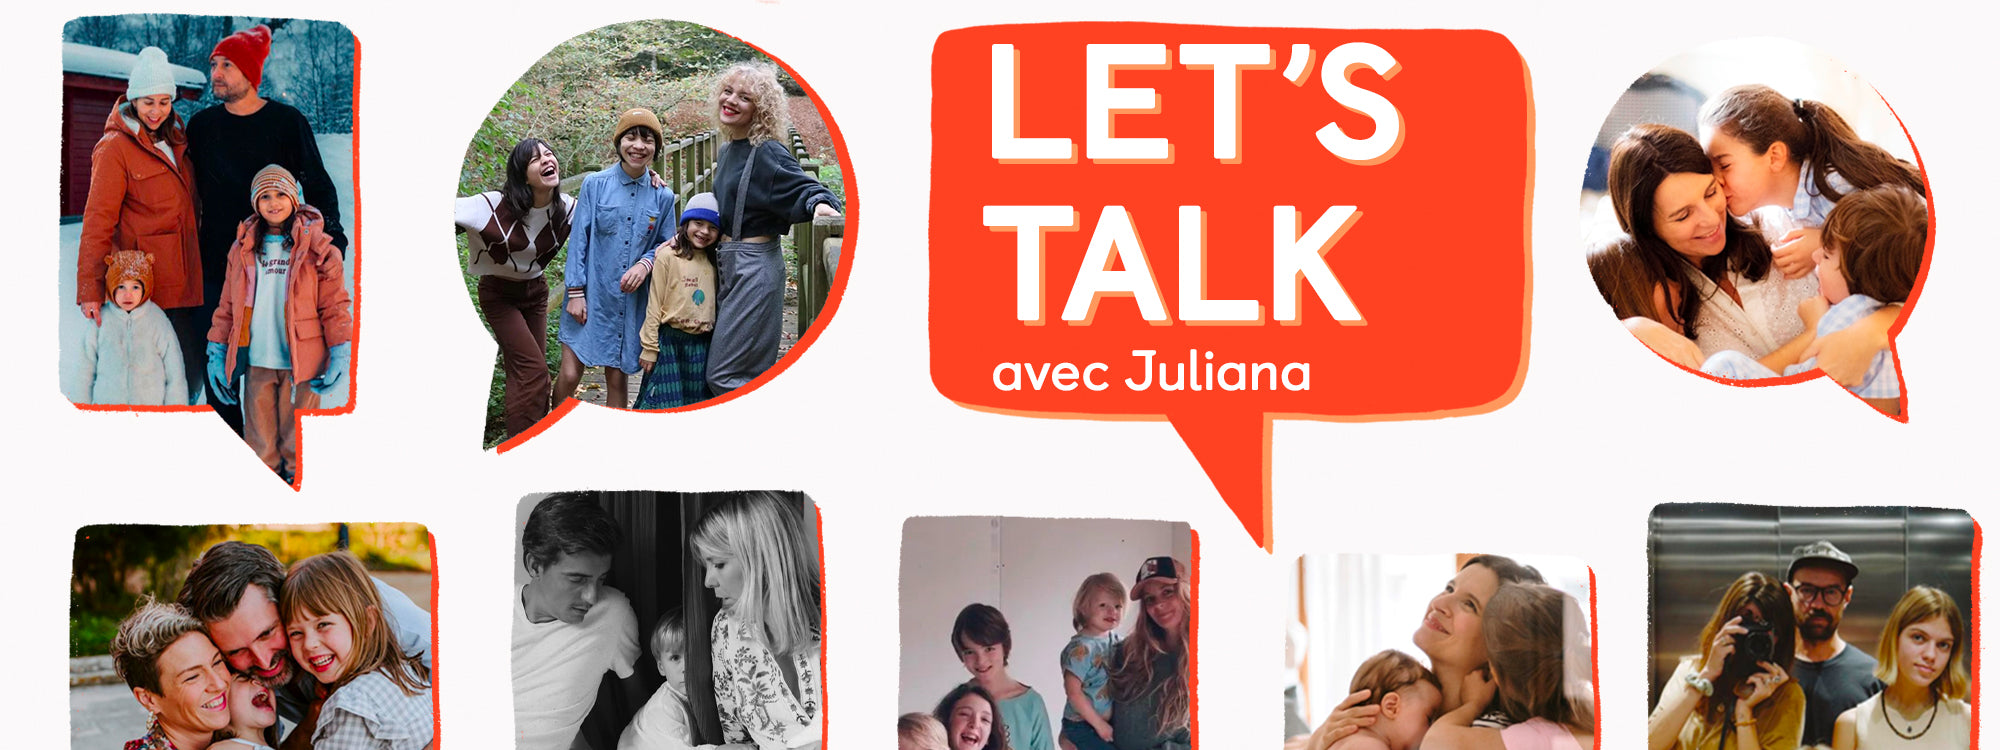 Let's Talk avec Juliana